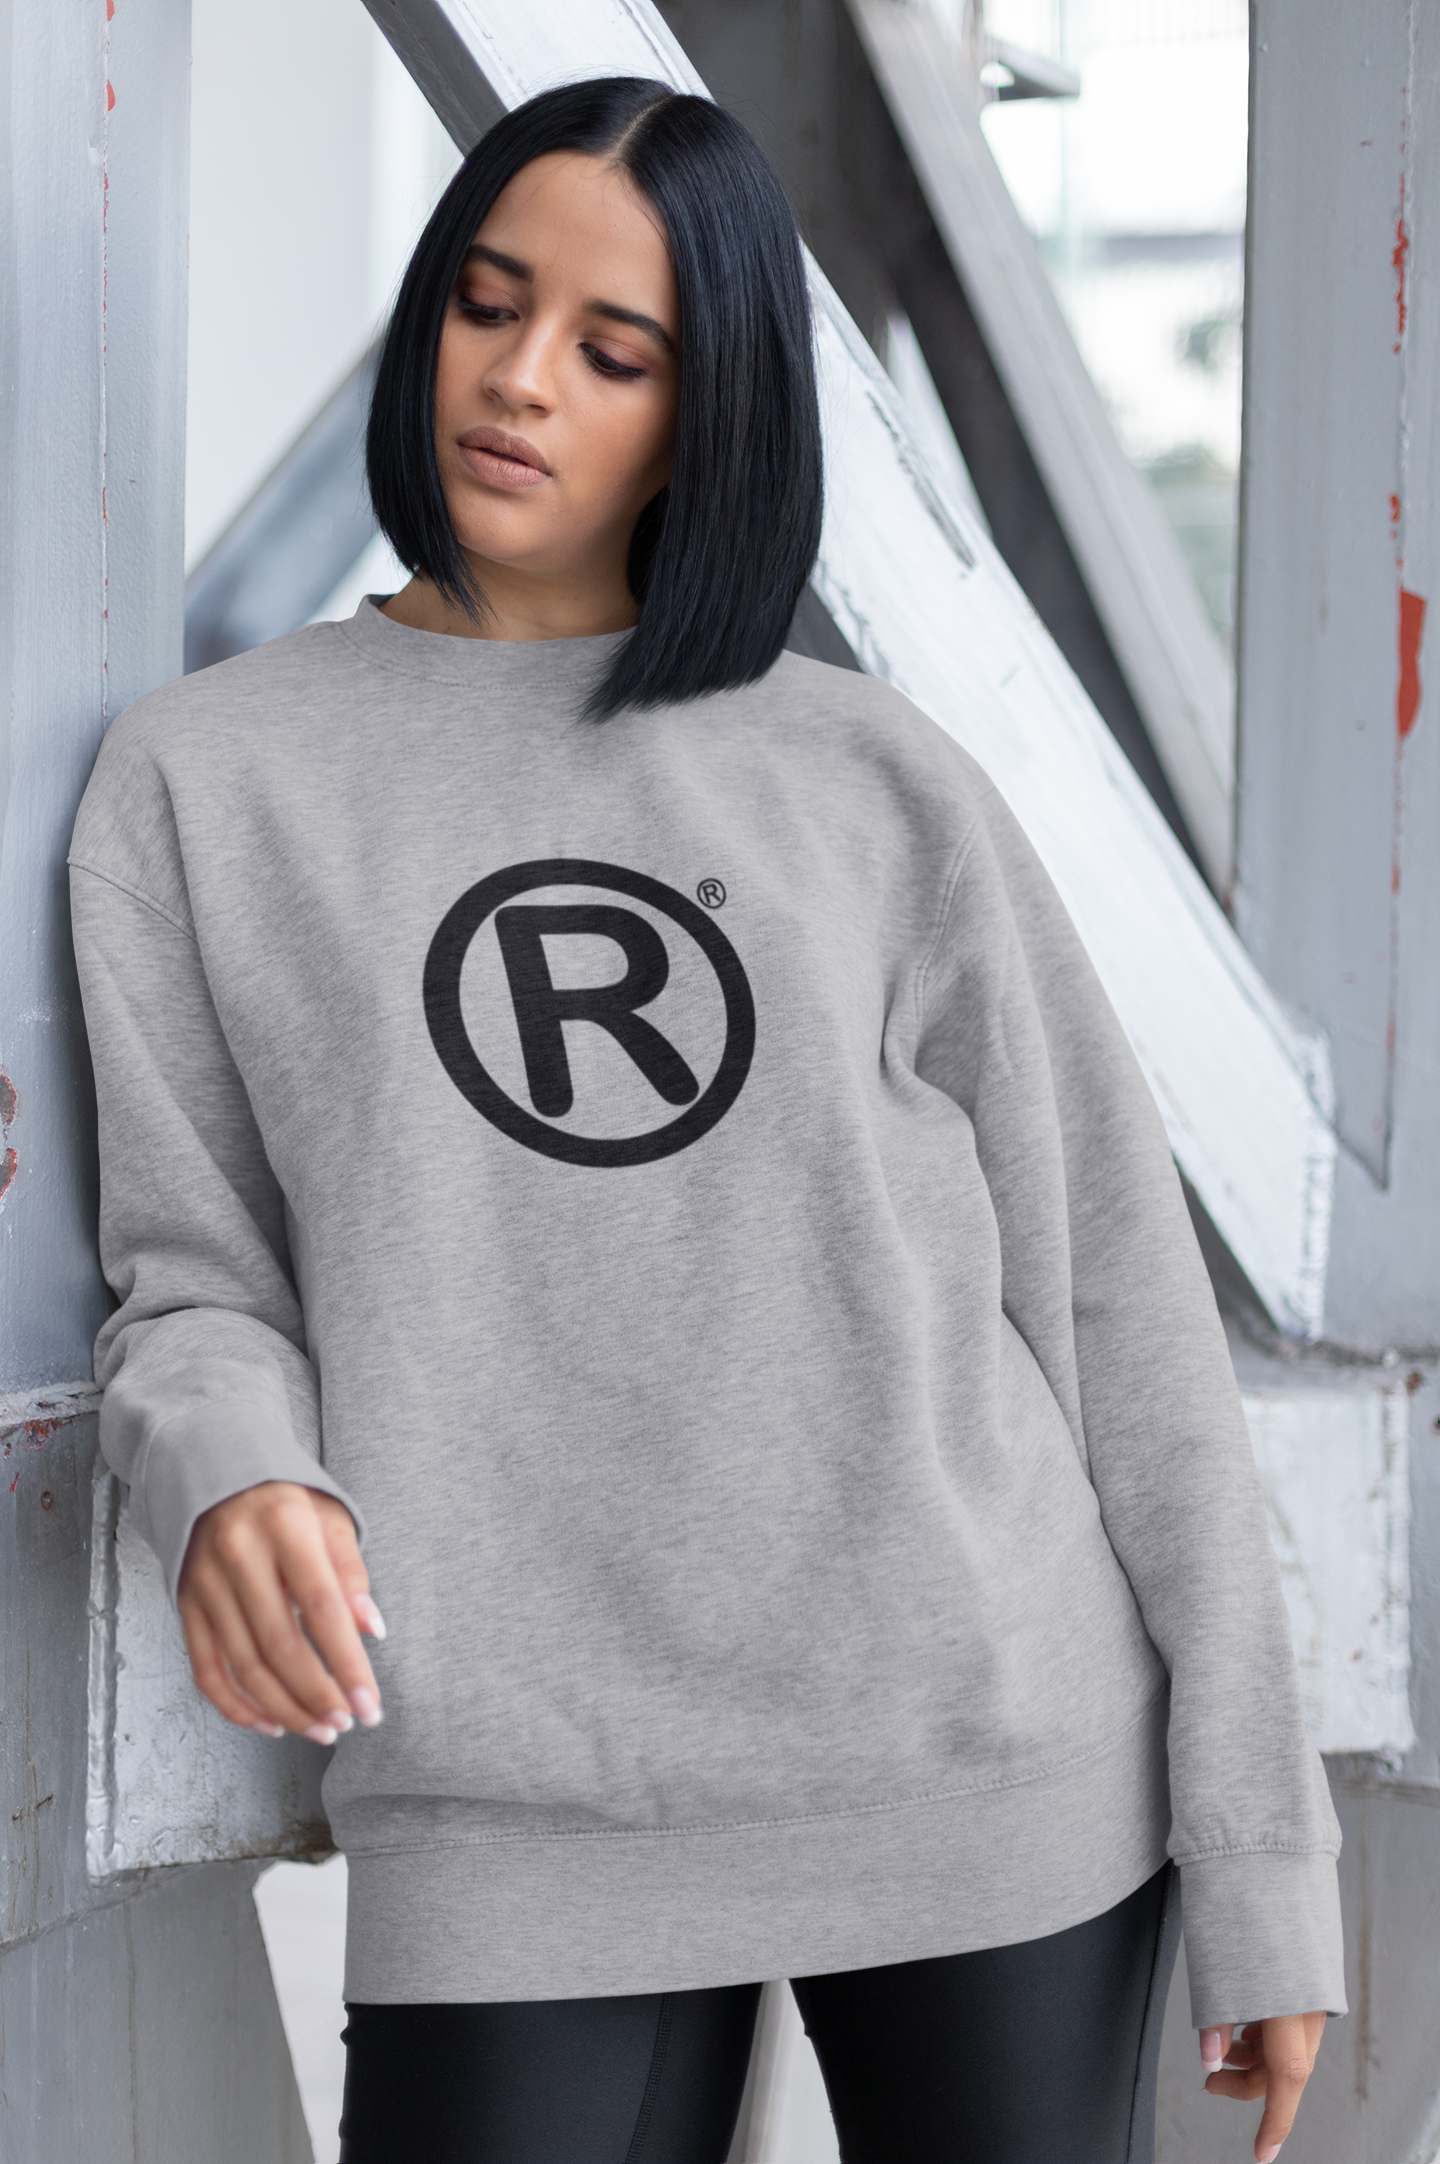 R Sweater Women/Unisex Baggy